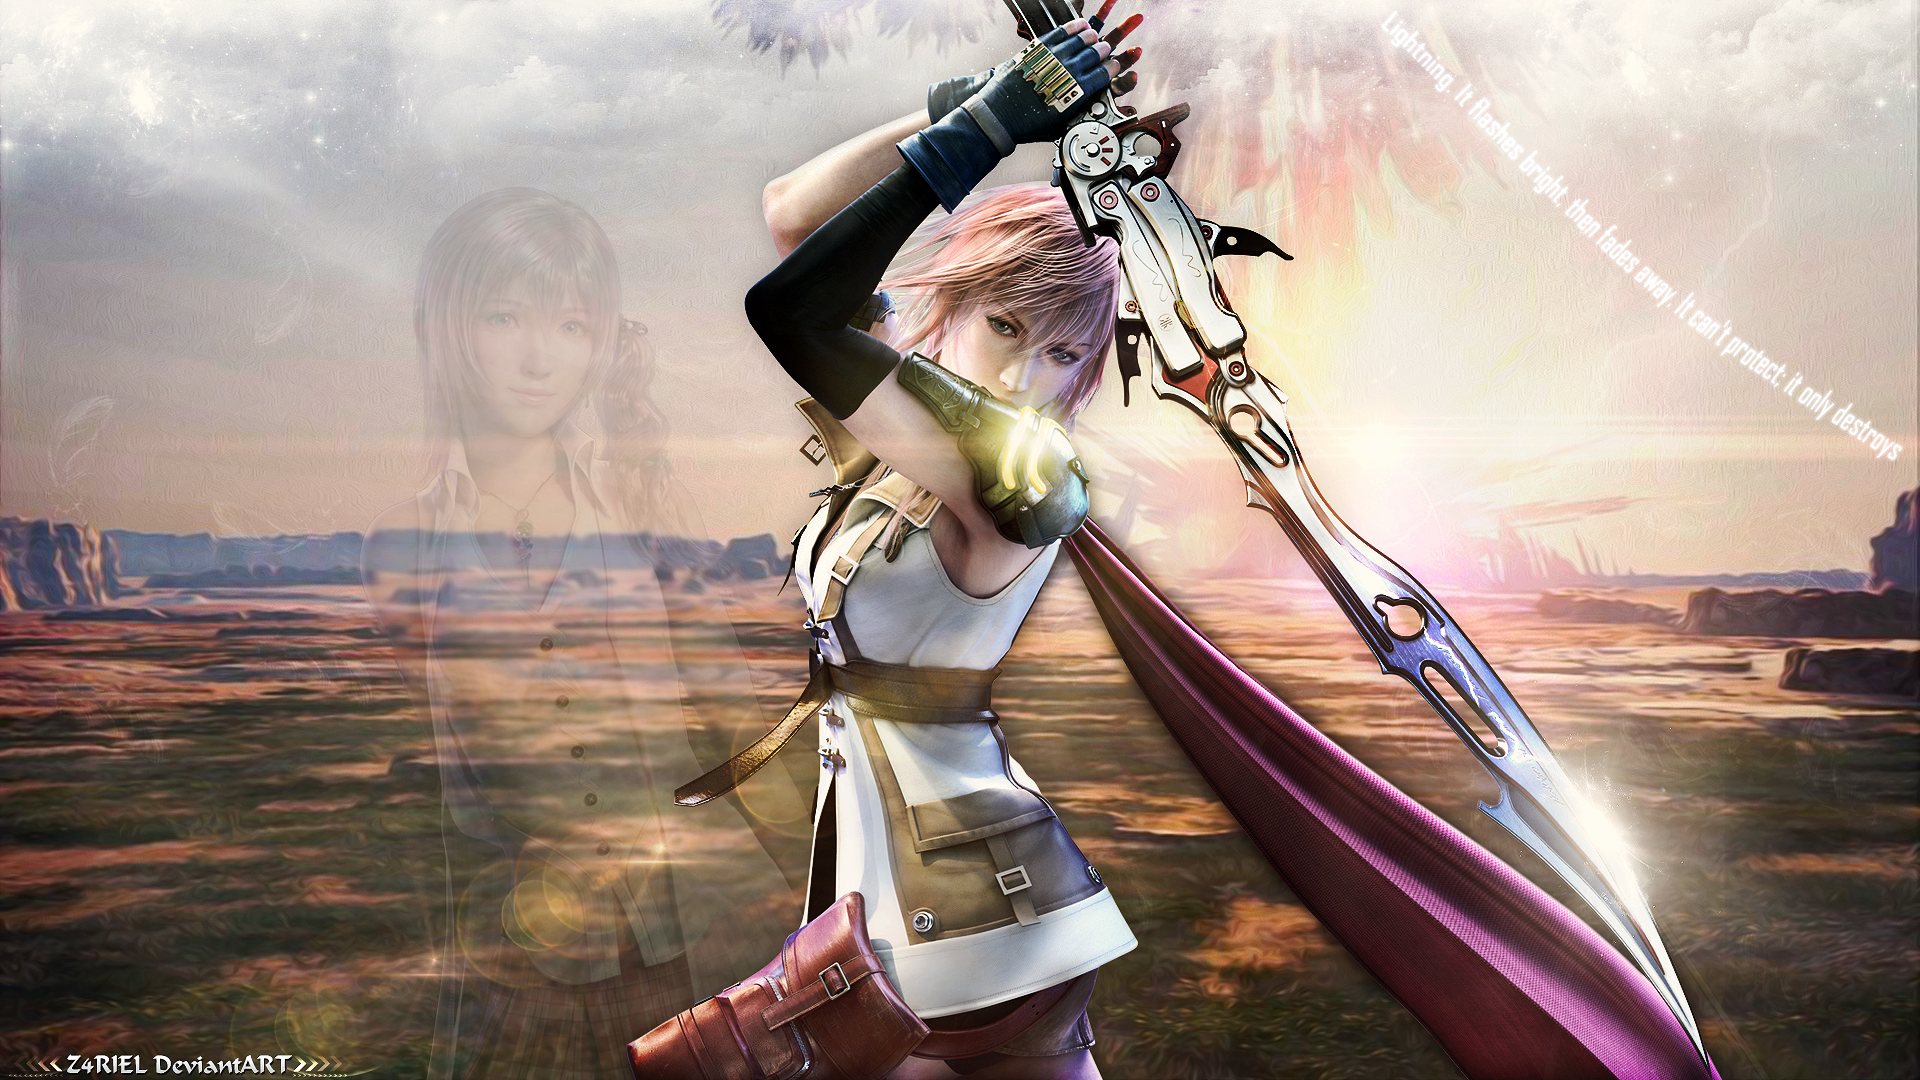 Wallpaper Lightning Final Fantasy Xiii By Z4riel On